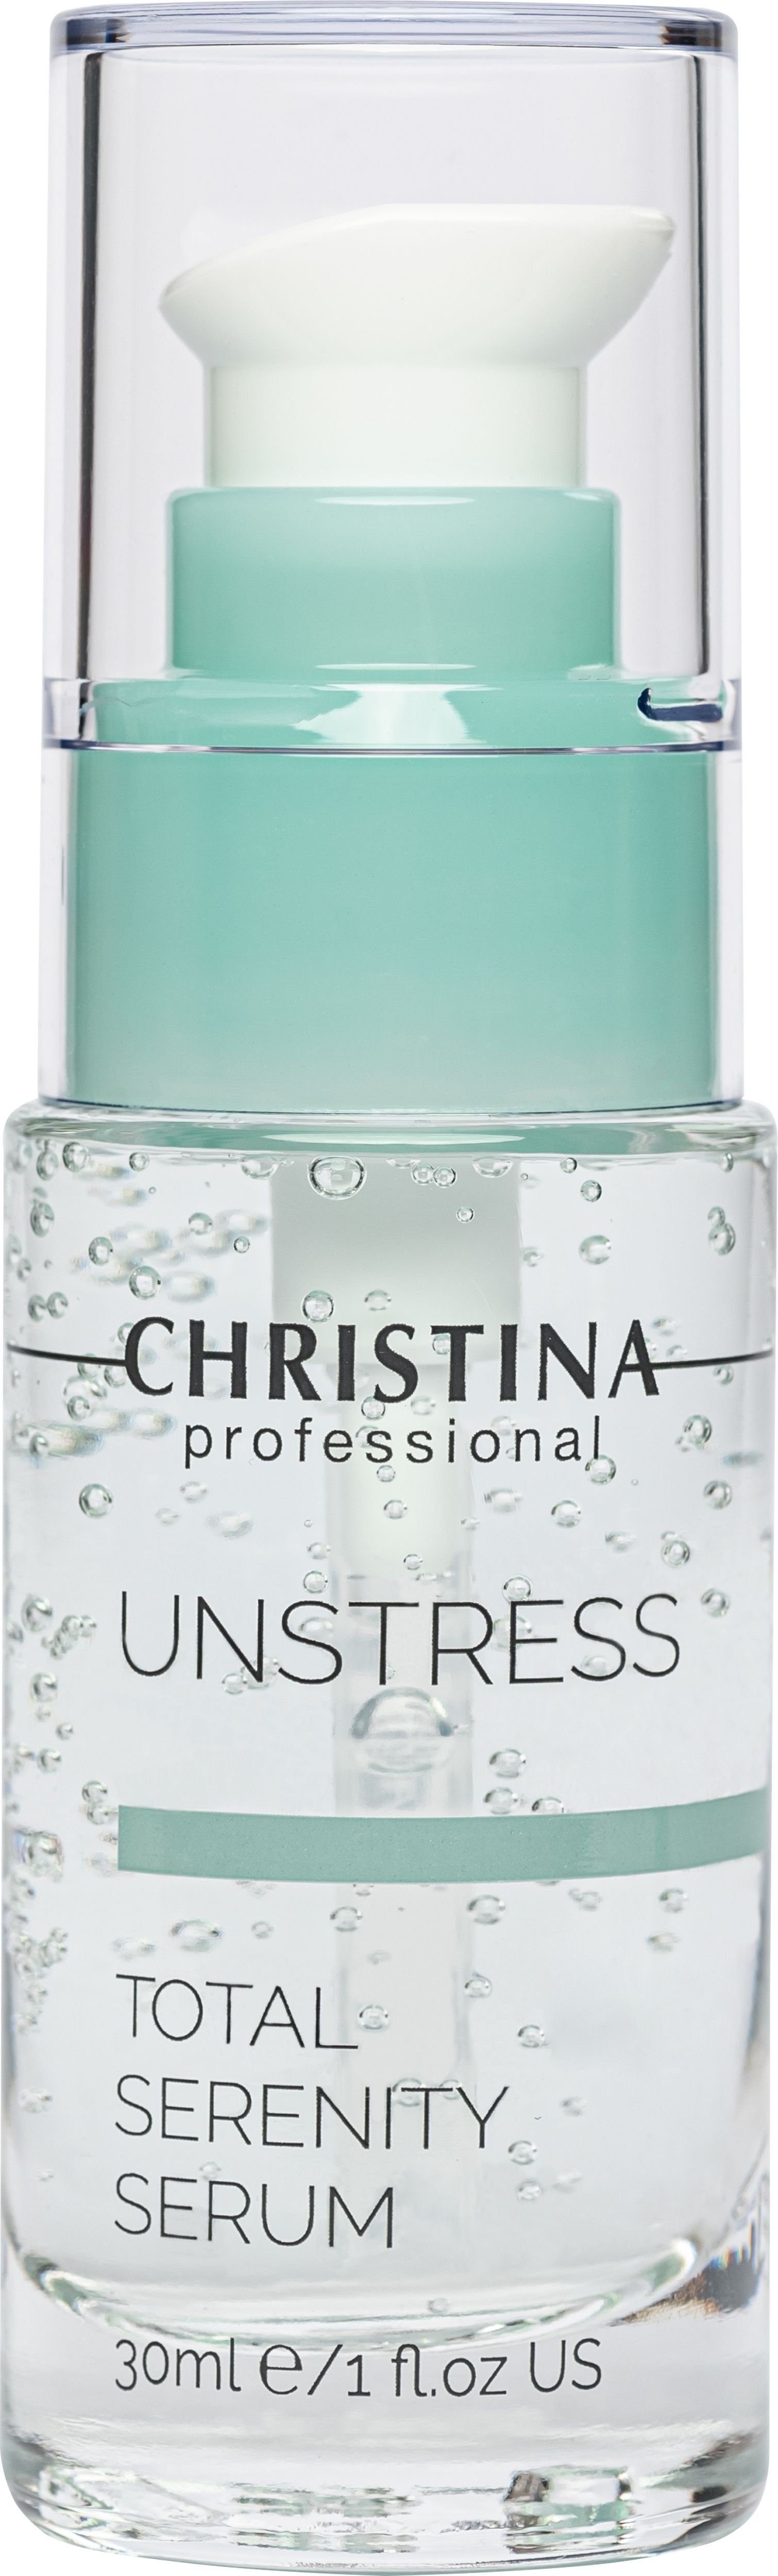 Подарочный набор Christina Unstress: Очищающий мусс 200 мл + Тоник 300 мл + Успокаивающая сыворотка 30 мл + Защитный крем SPF 15 50 мл - фото 4